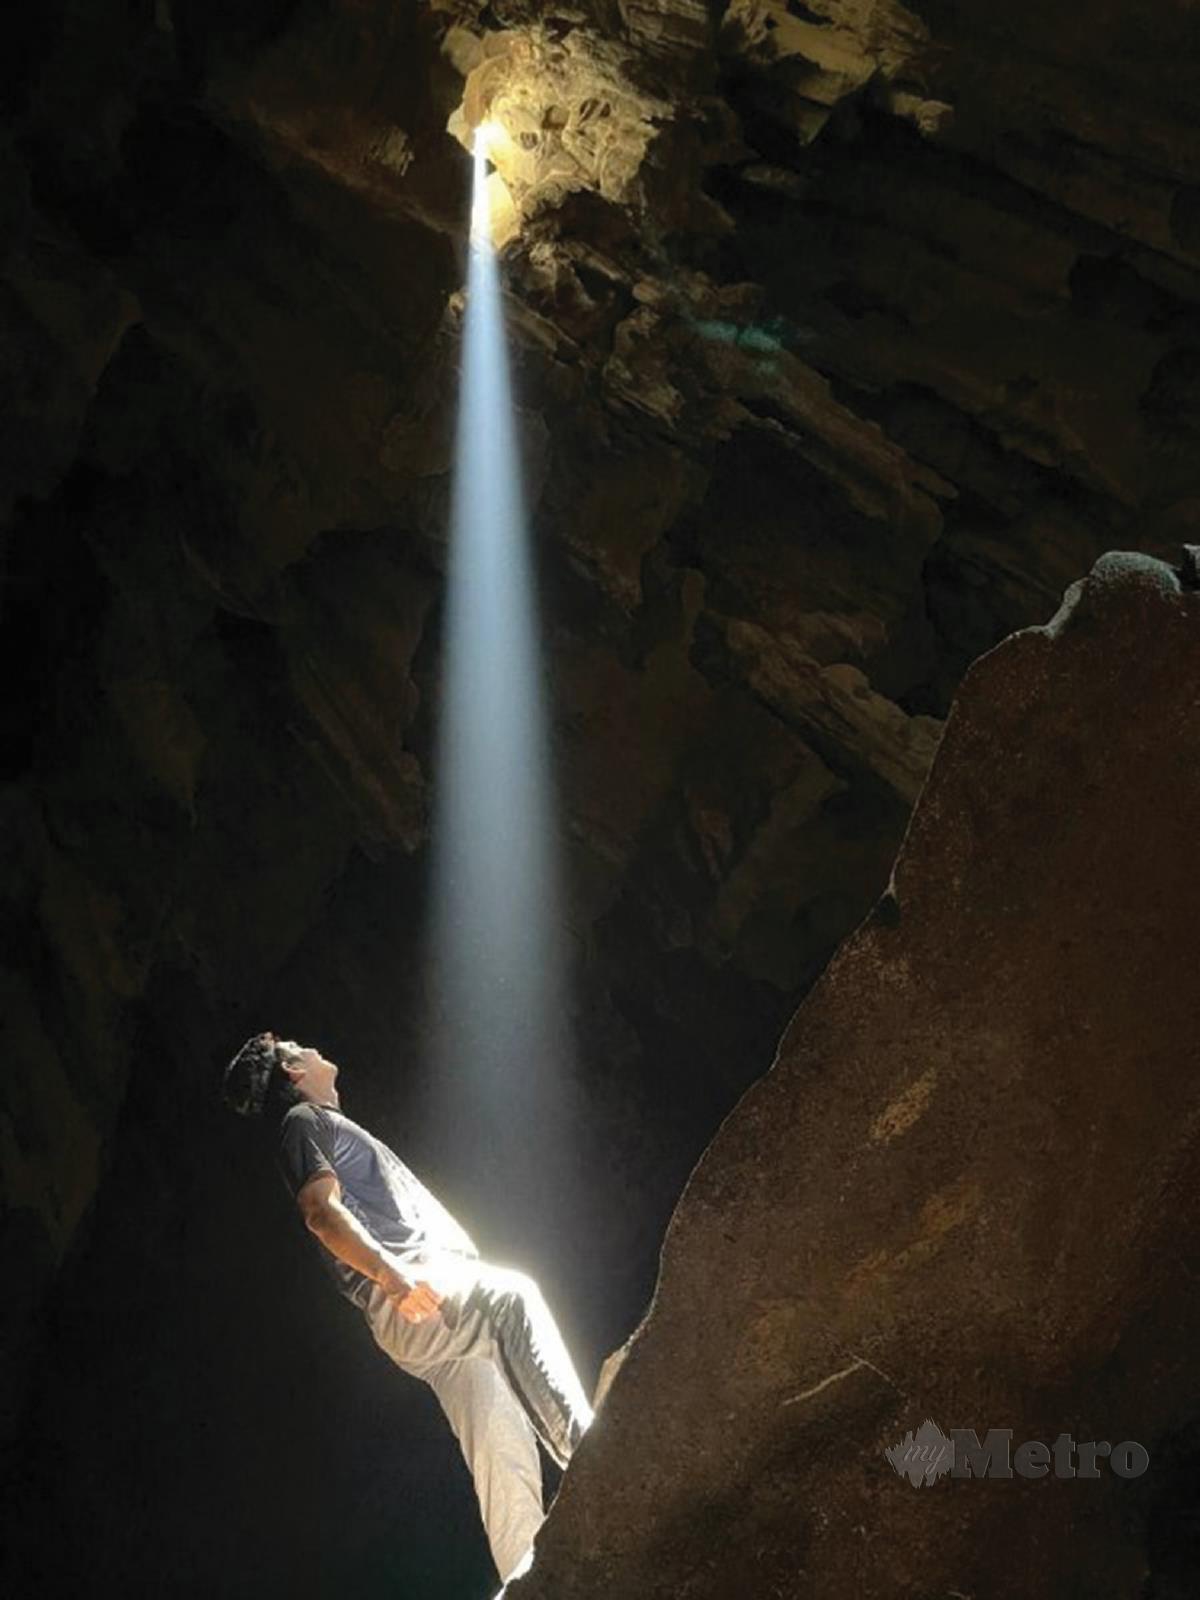 FENOMENA God's Light menjadi kegilaan peminat aktiviti teroka gua.